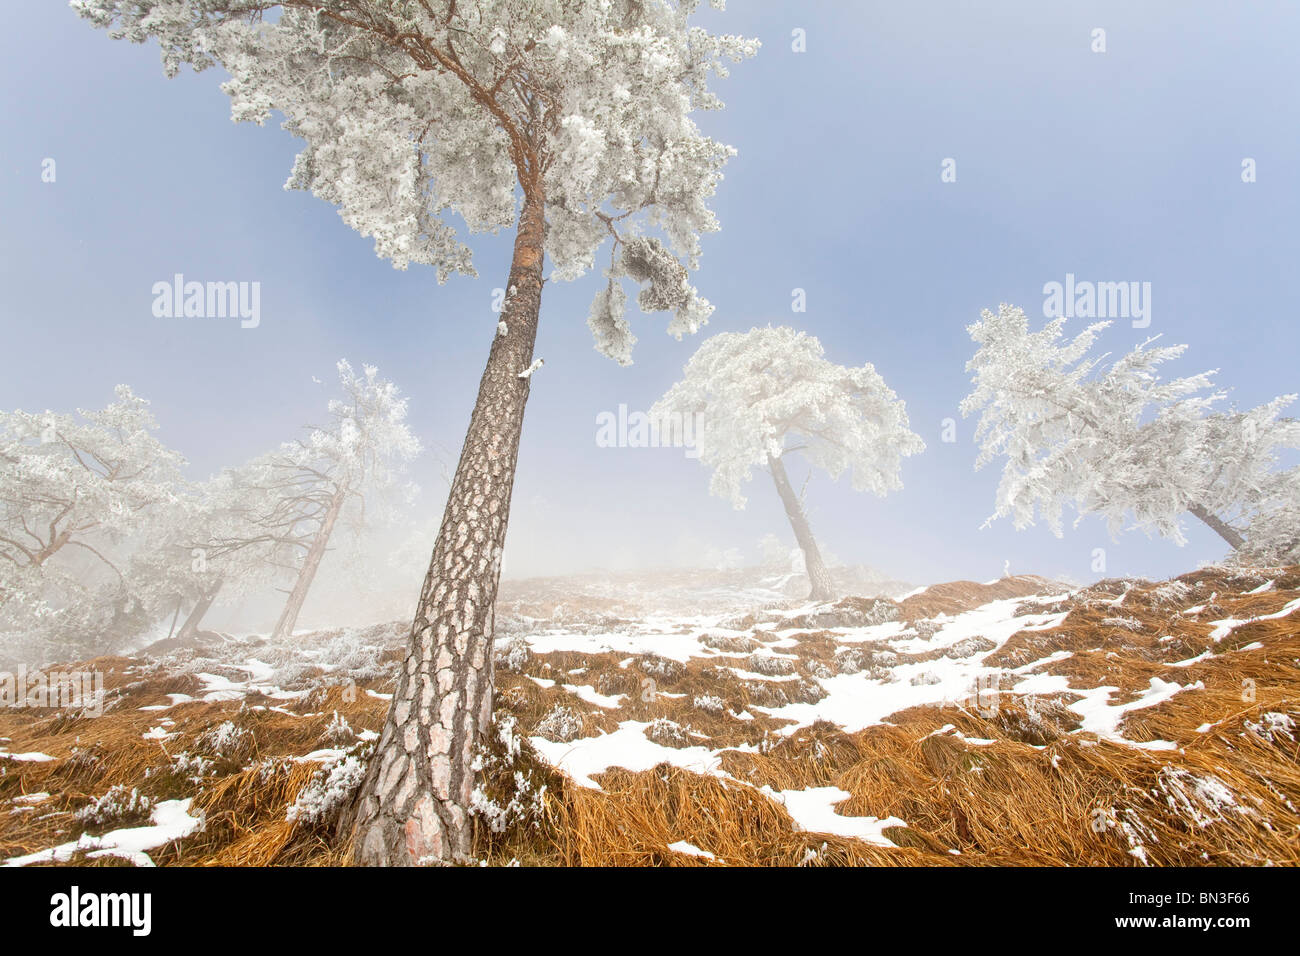 Les pins (Pinus sylvestris) à Untersberg, Berchtesgaden, Allemagne, low angle view Banque D'Images